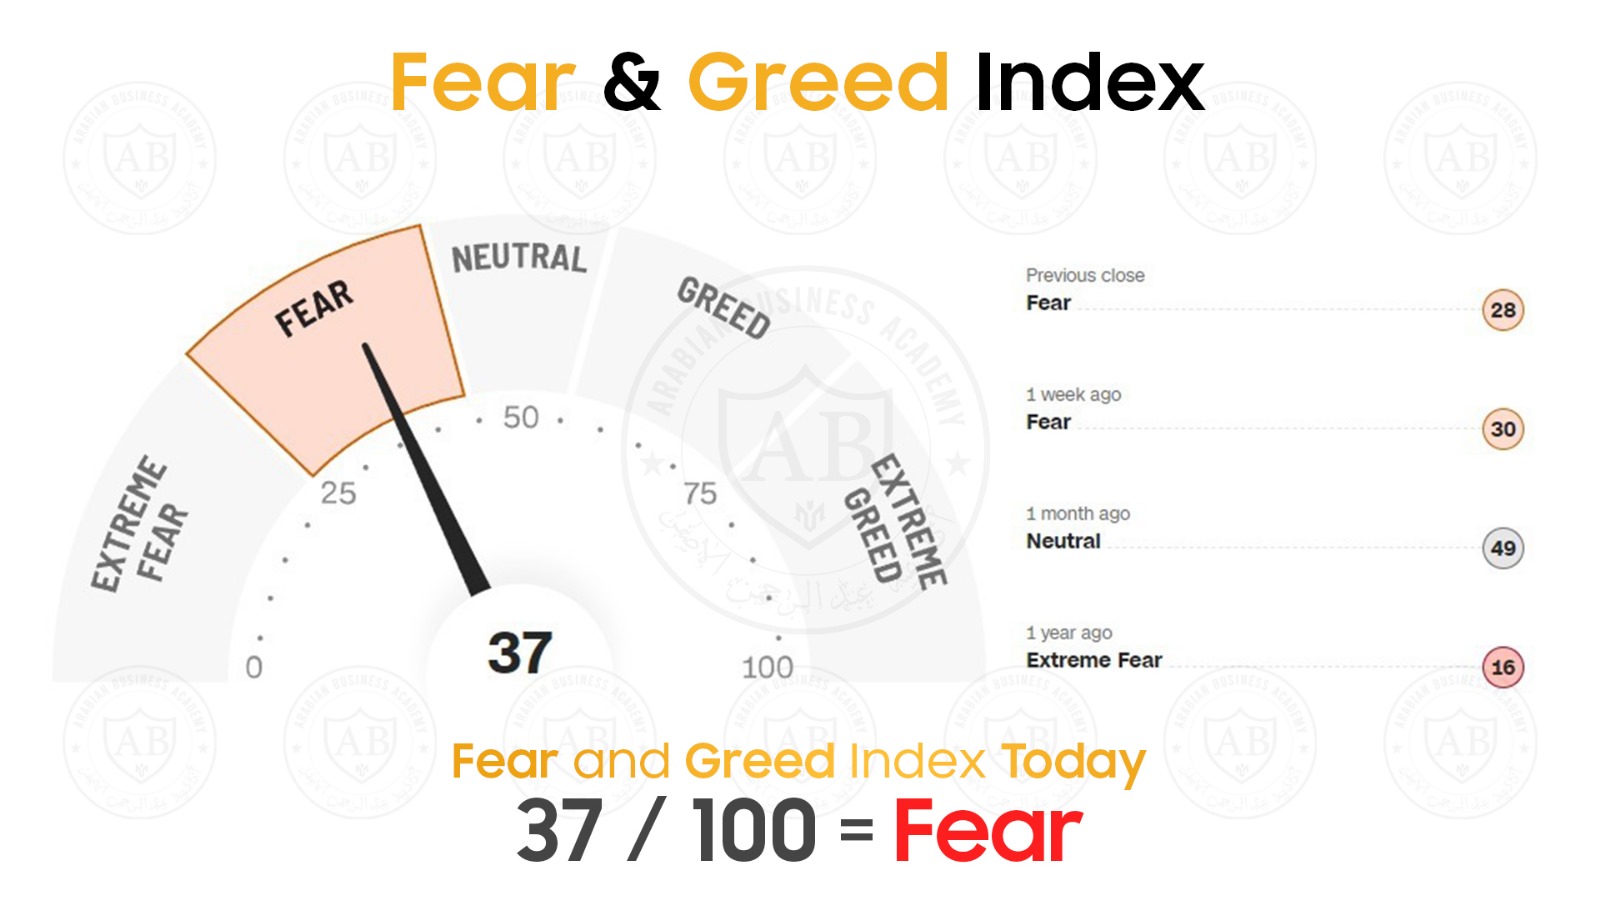 مؤشر  Fear and Greed  في أسواق الأسهم يشير  الى 37 /100  لجلسة اليوم